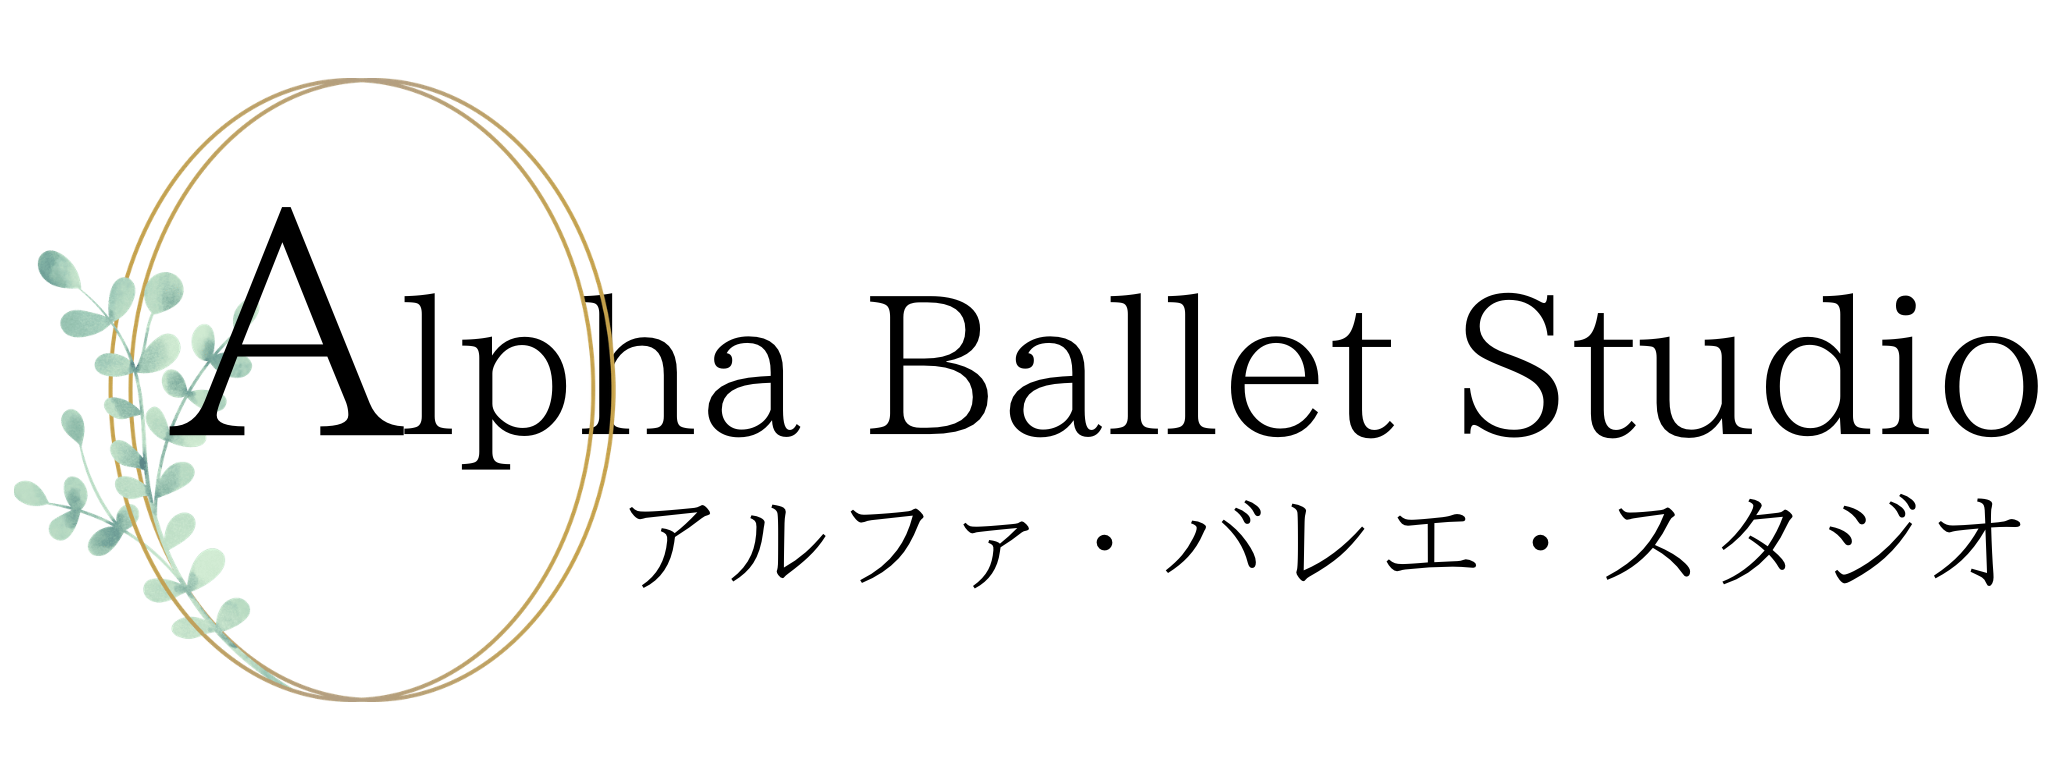 Alpha Ballet Studio|アルファバレエスタジオ